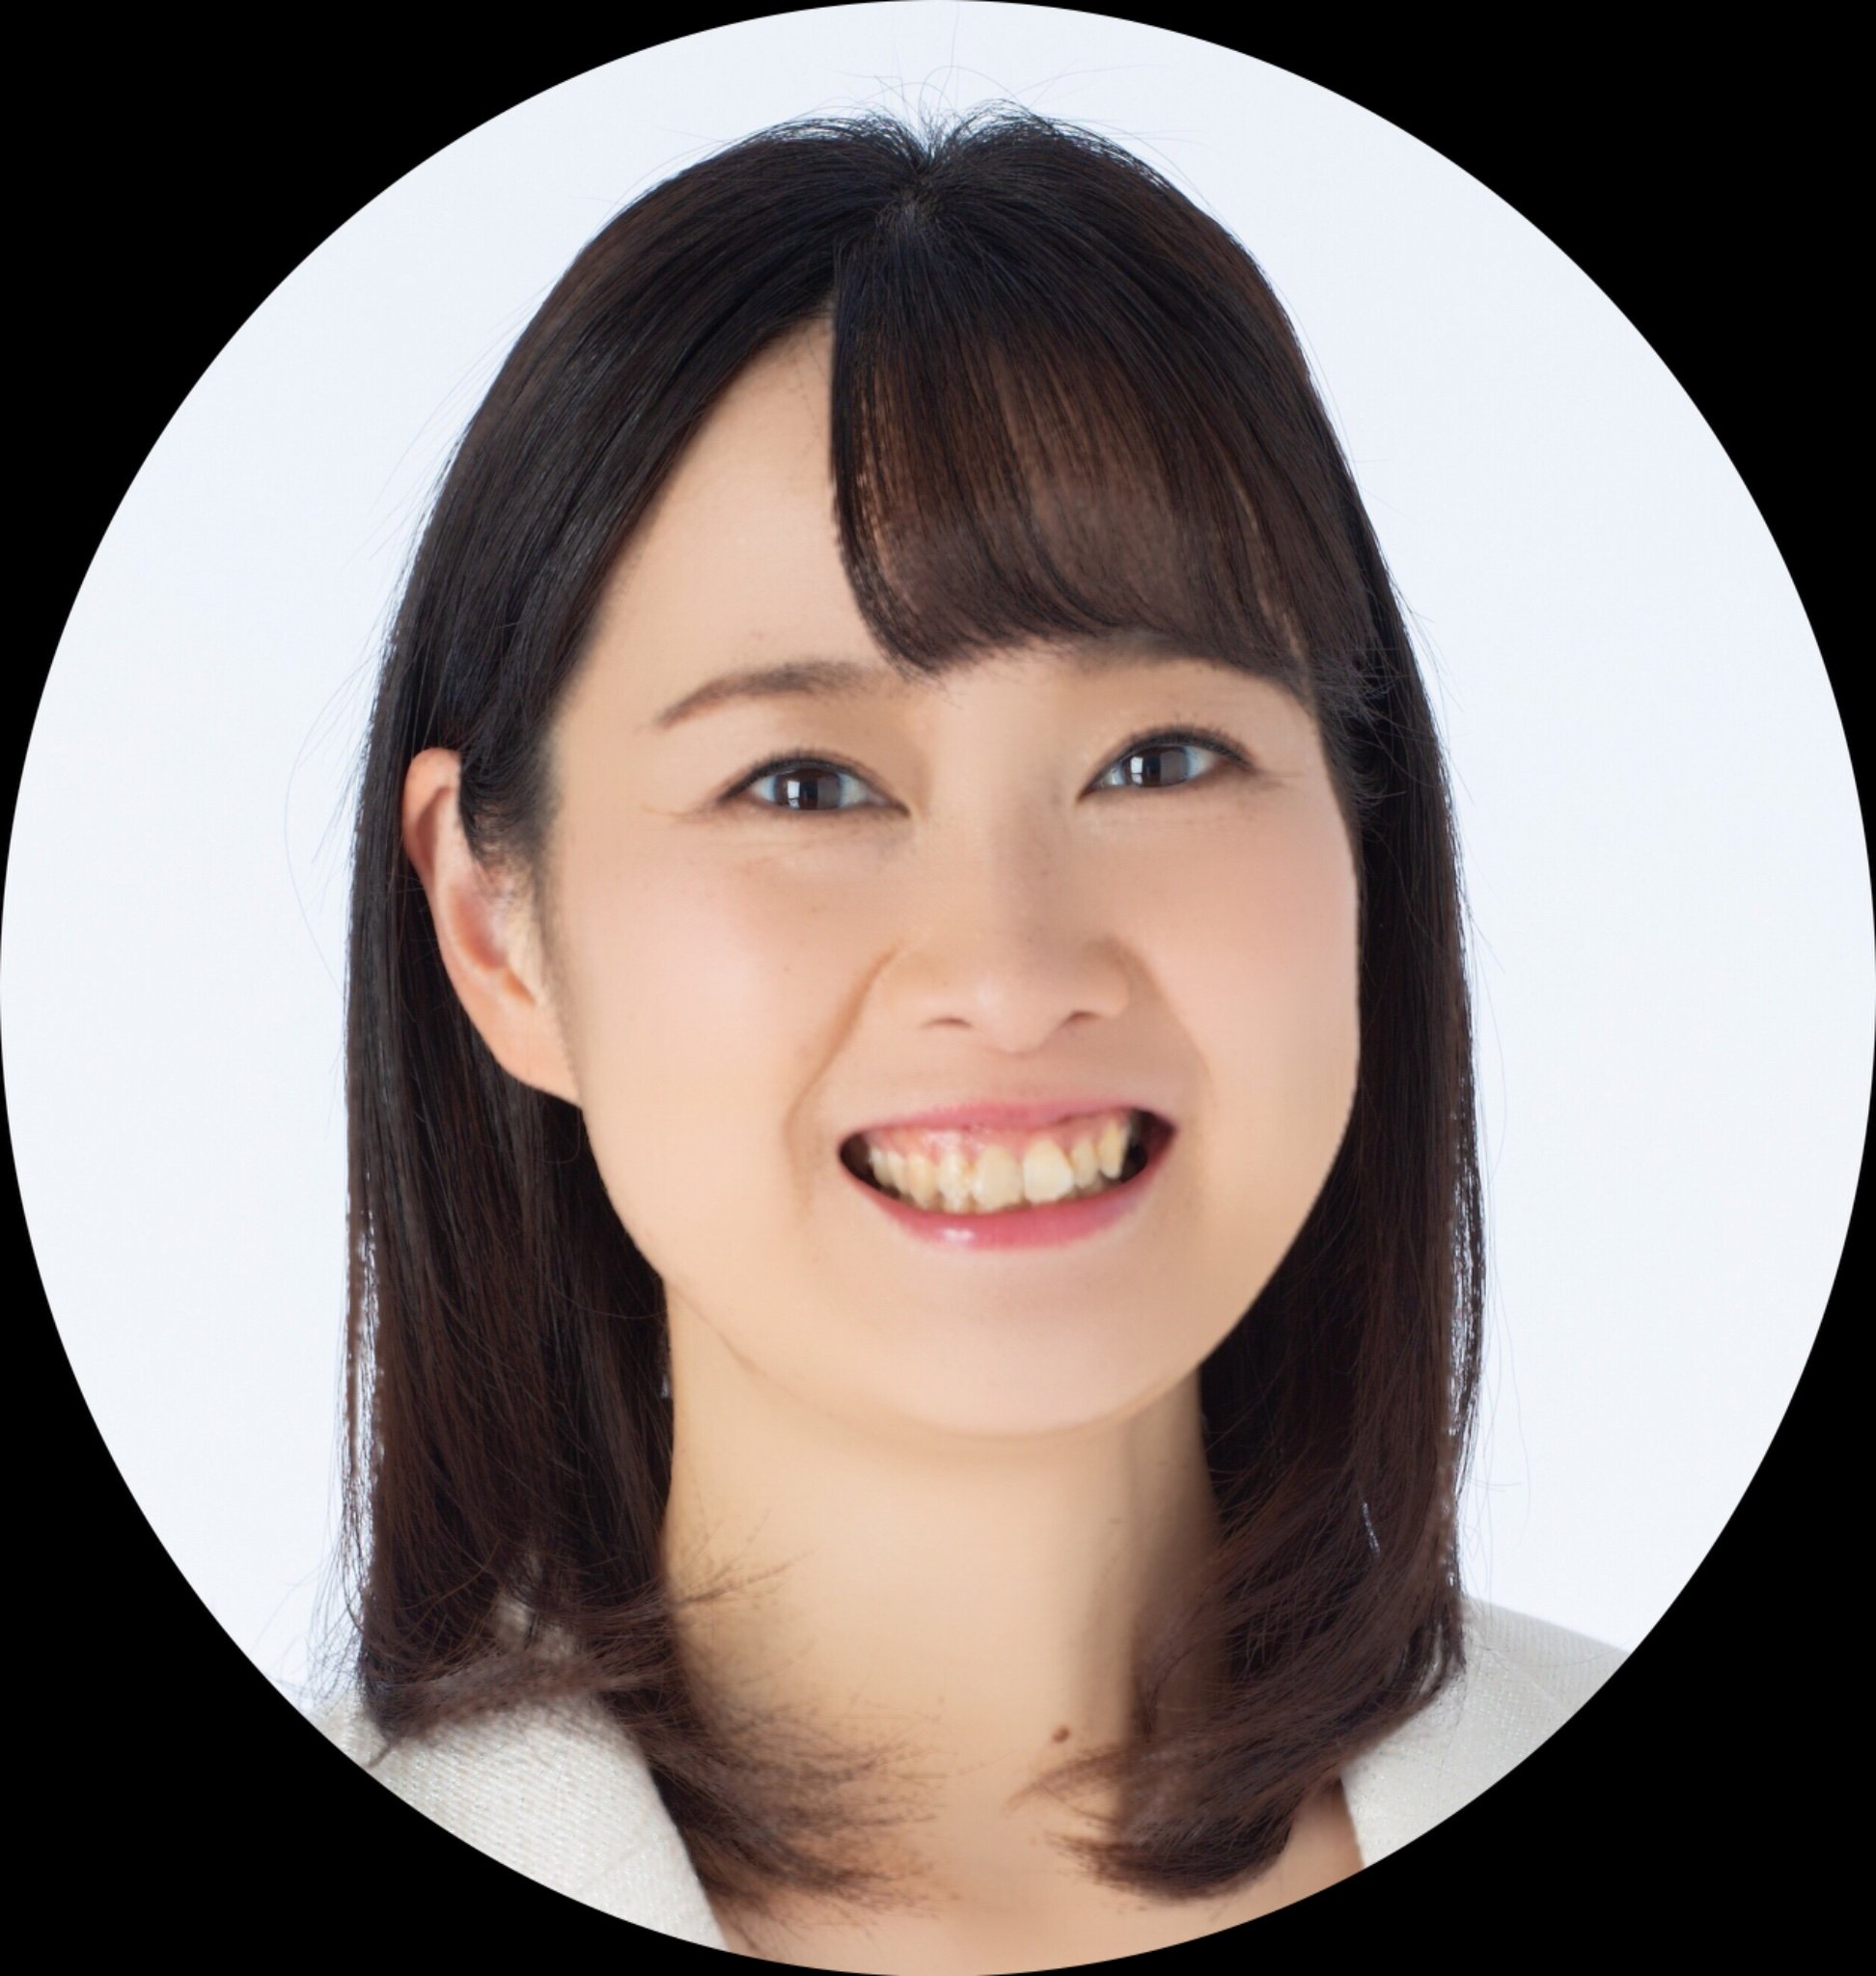 keiko12nagaoka Profile Picture